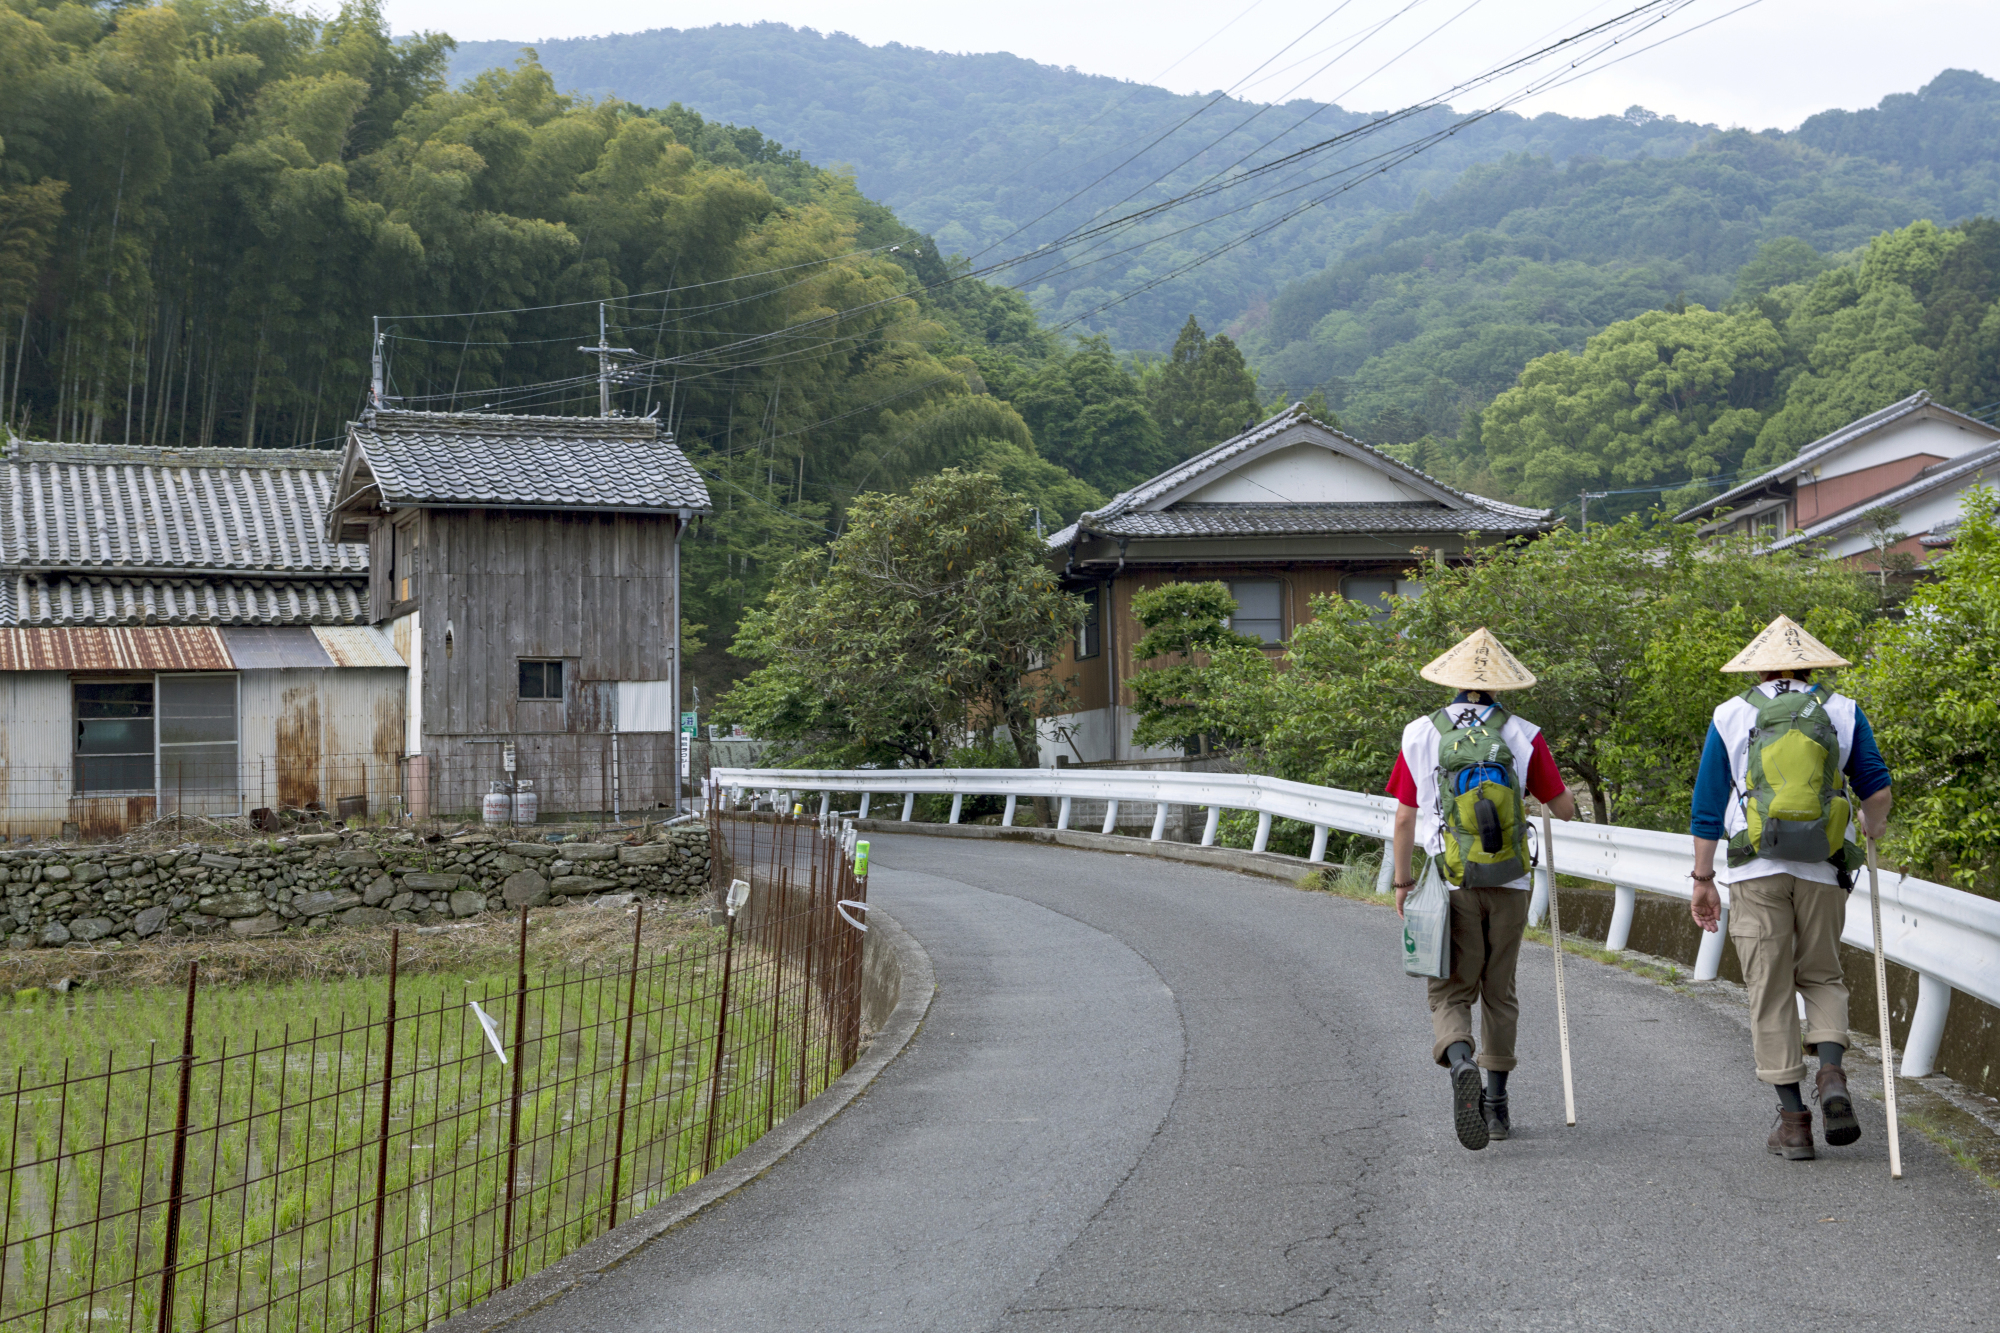 Two's company: Pilgrims walking the more humble parts of the Shikoku Pilgrimage | CHRISTINA SJOGREN